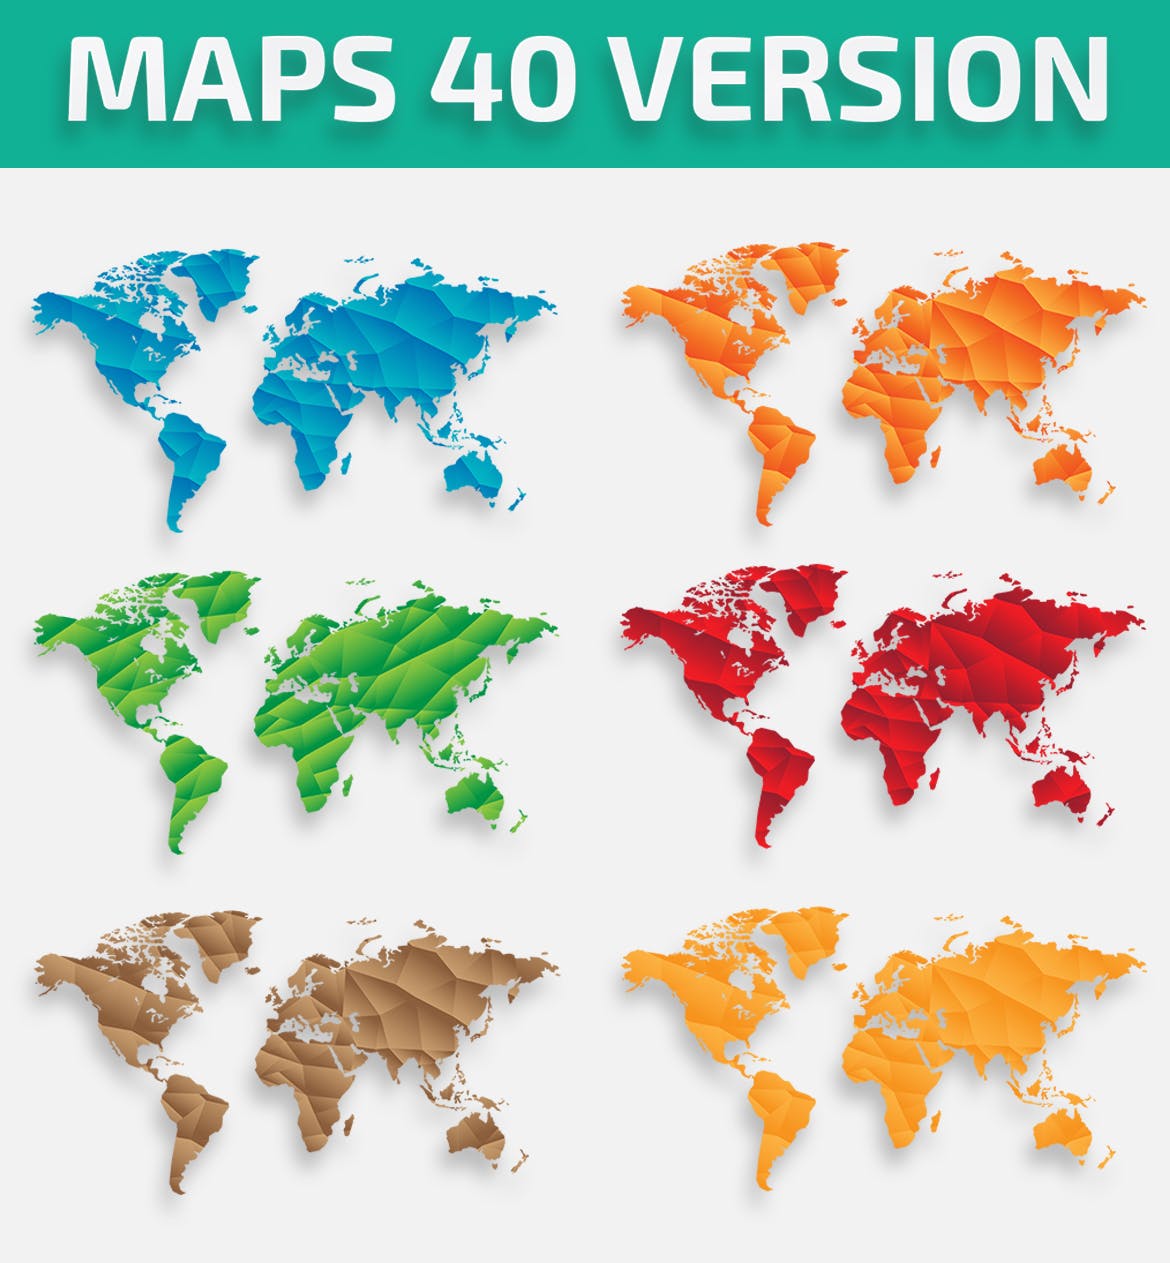 40种设计风格世界地图矢量图形设计素材下载 Map of the world 40 Version插图(1)